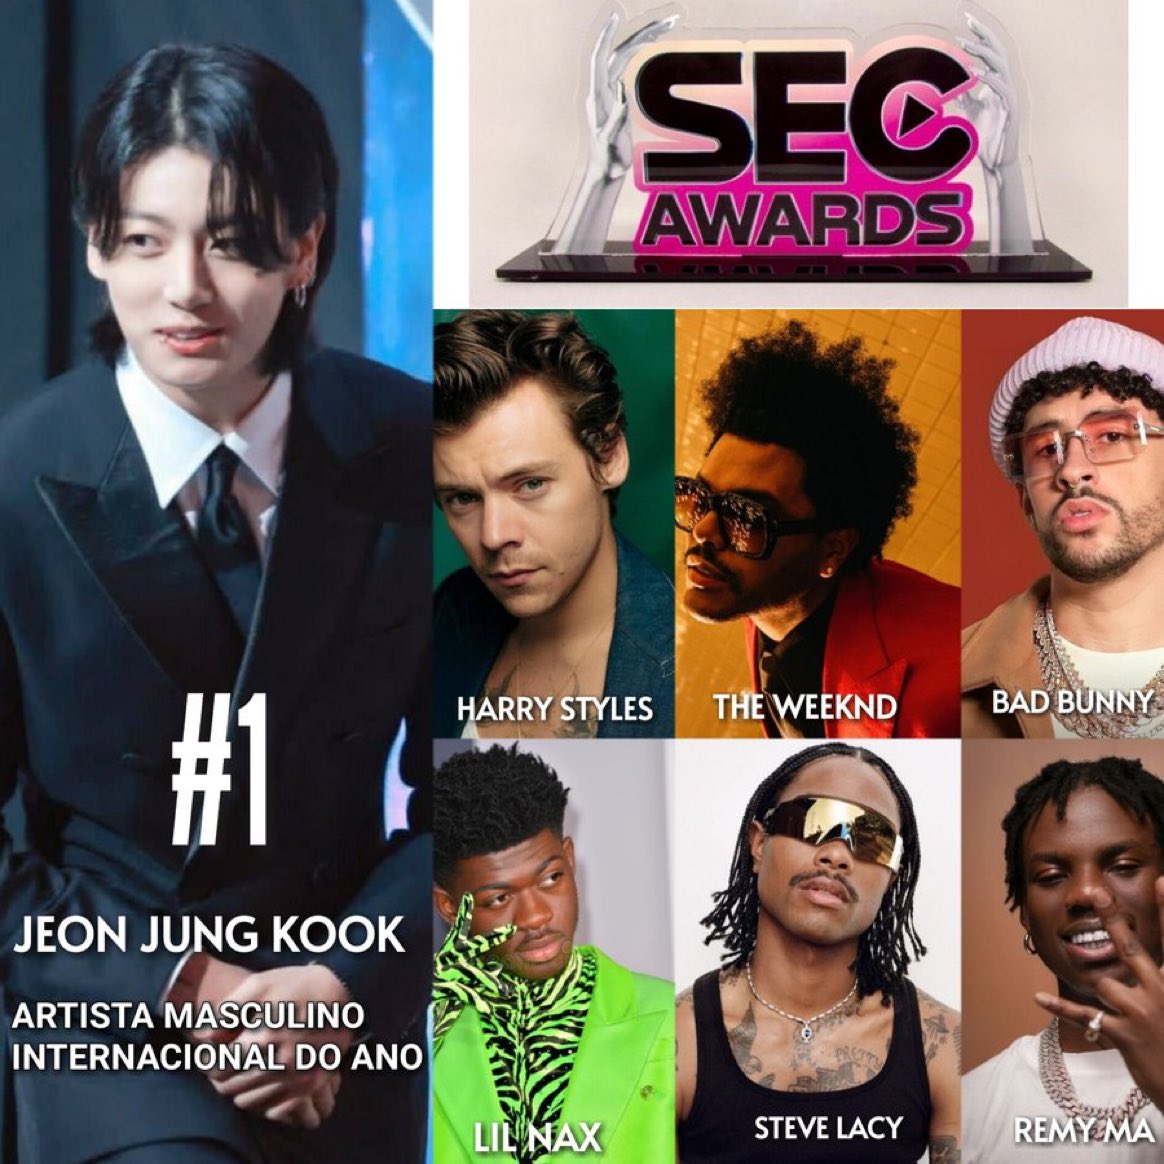 Jungkook, SEC Awards 2023'te Harry Styles, The Weeknd, Bad Bunny'ye karşı 'Uluslararası Yılın Erkek Sanatçısı' ödülünü kazandı. 

Galibiyet için fiziksel bir ödül alacak! 🏆🥳